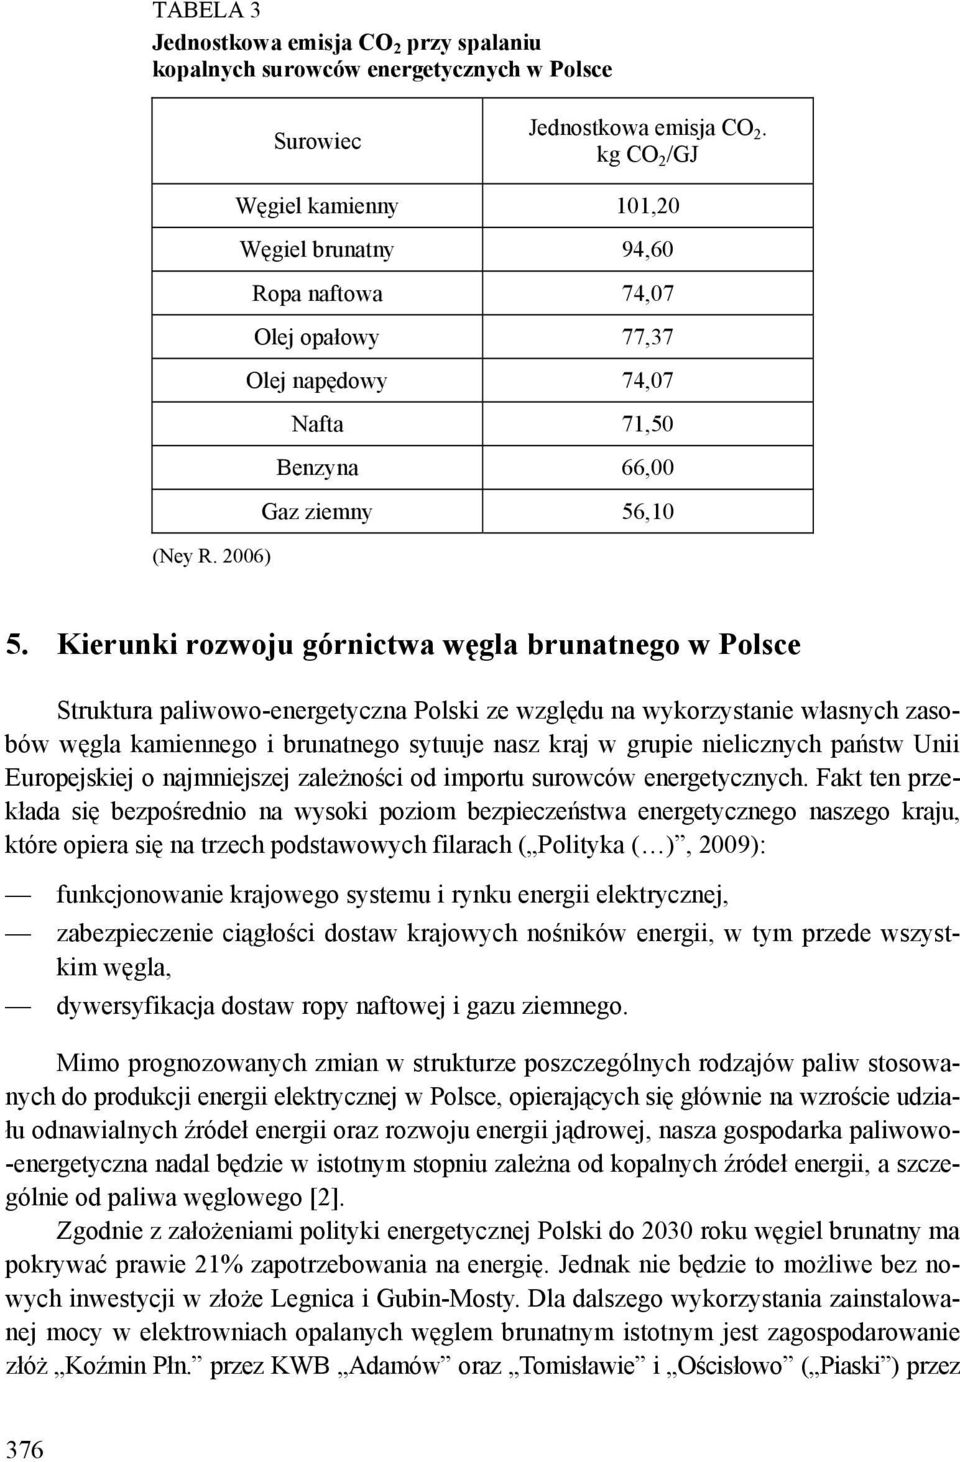 Kierunki rozwoju górnictwa węgla brunatnego w Polsce Struktura paliwowo-energetyczna Polski ze względu na wykorzystanie własnych zasobów węgla kamiennego i brunatnego sytuuje nasz kraj w grupie